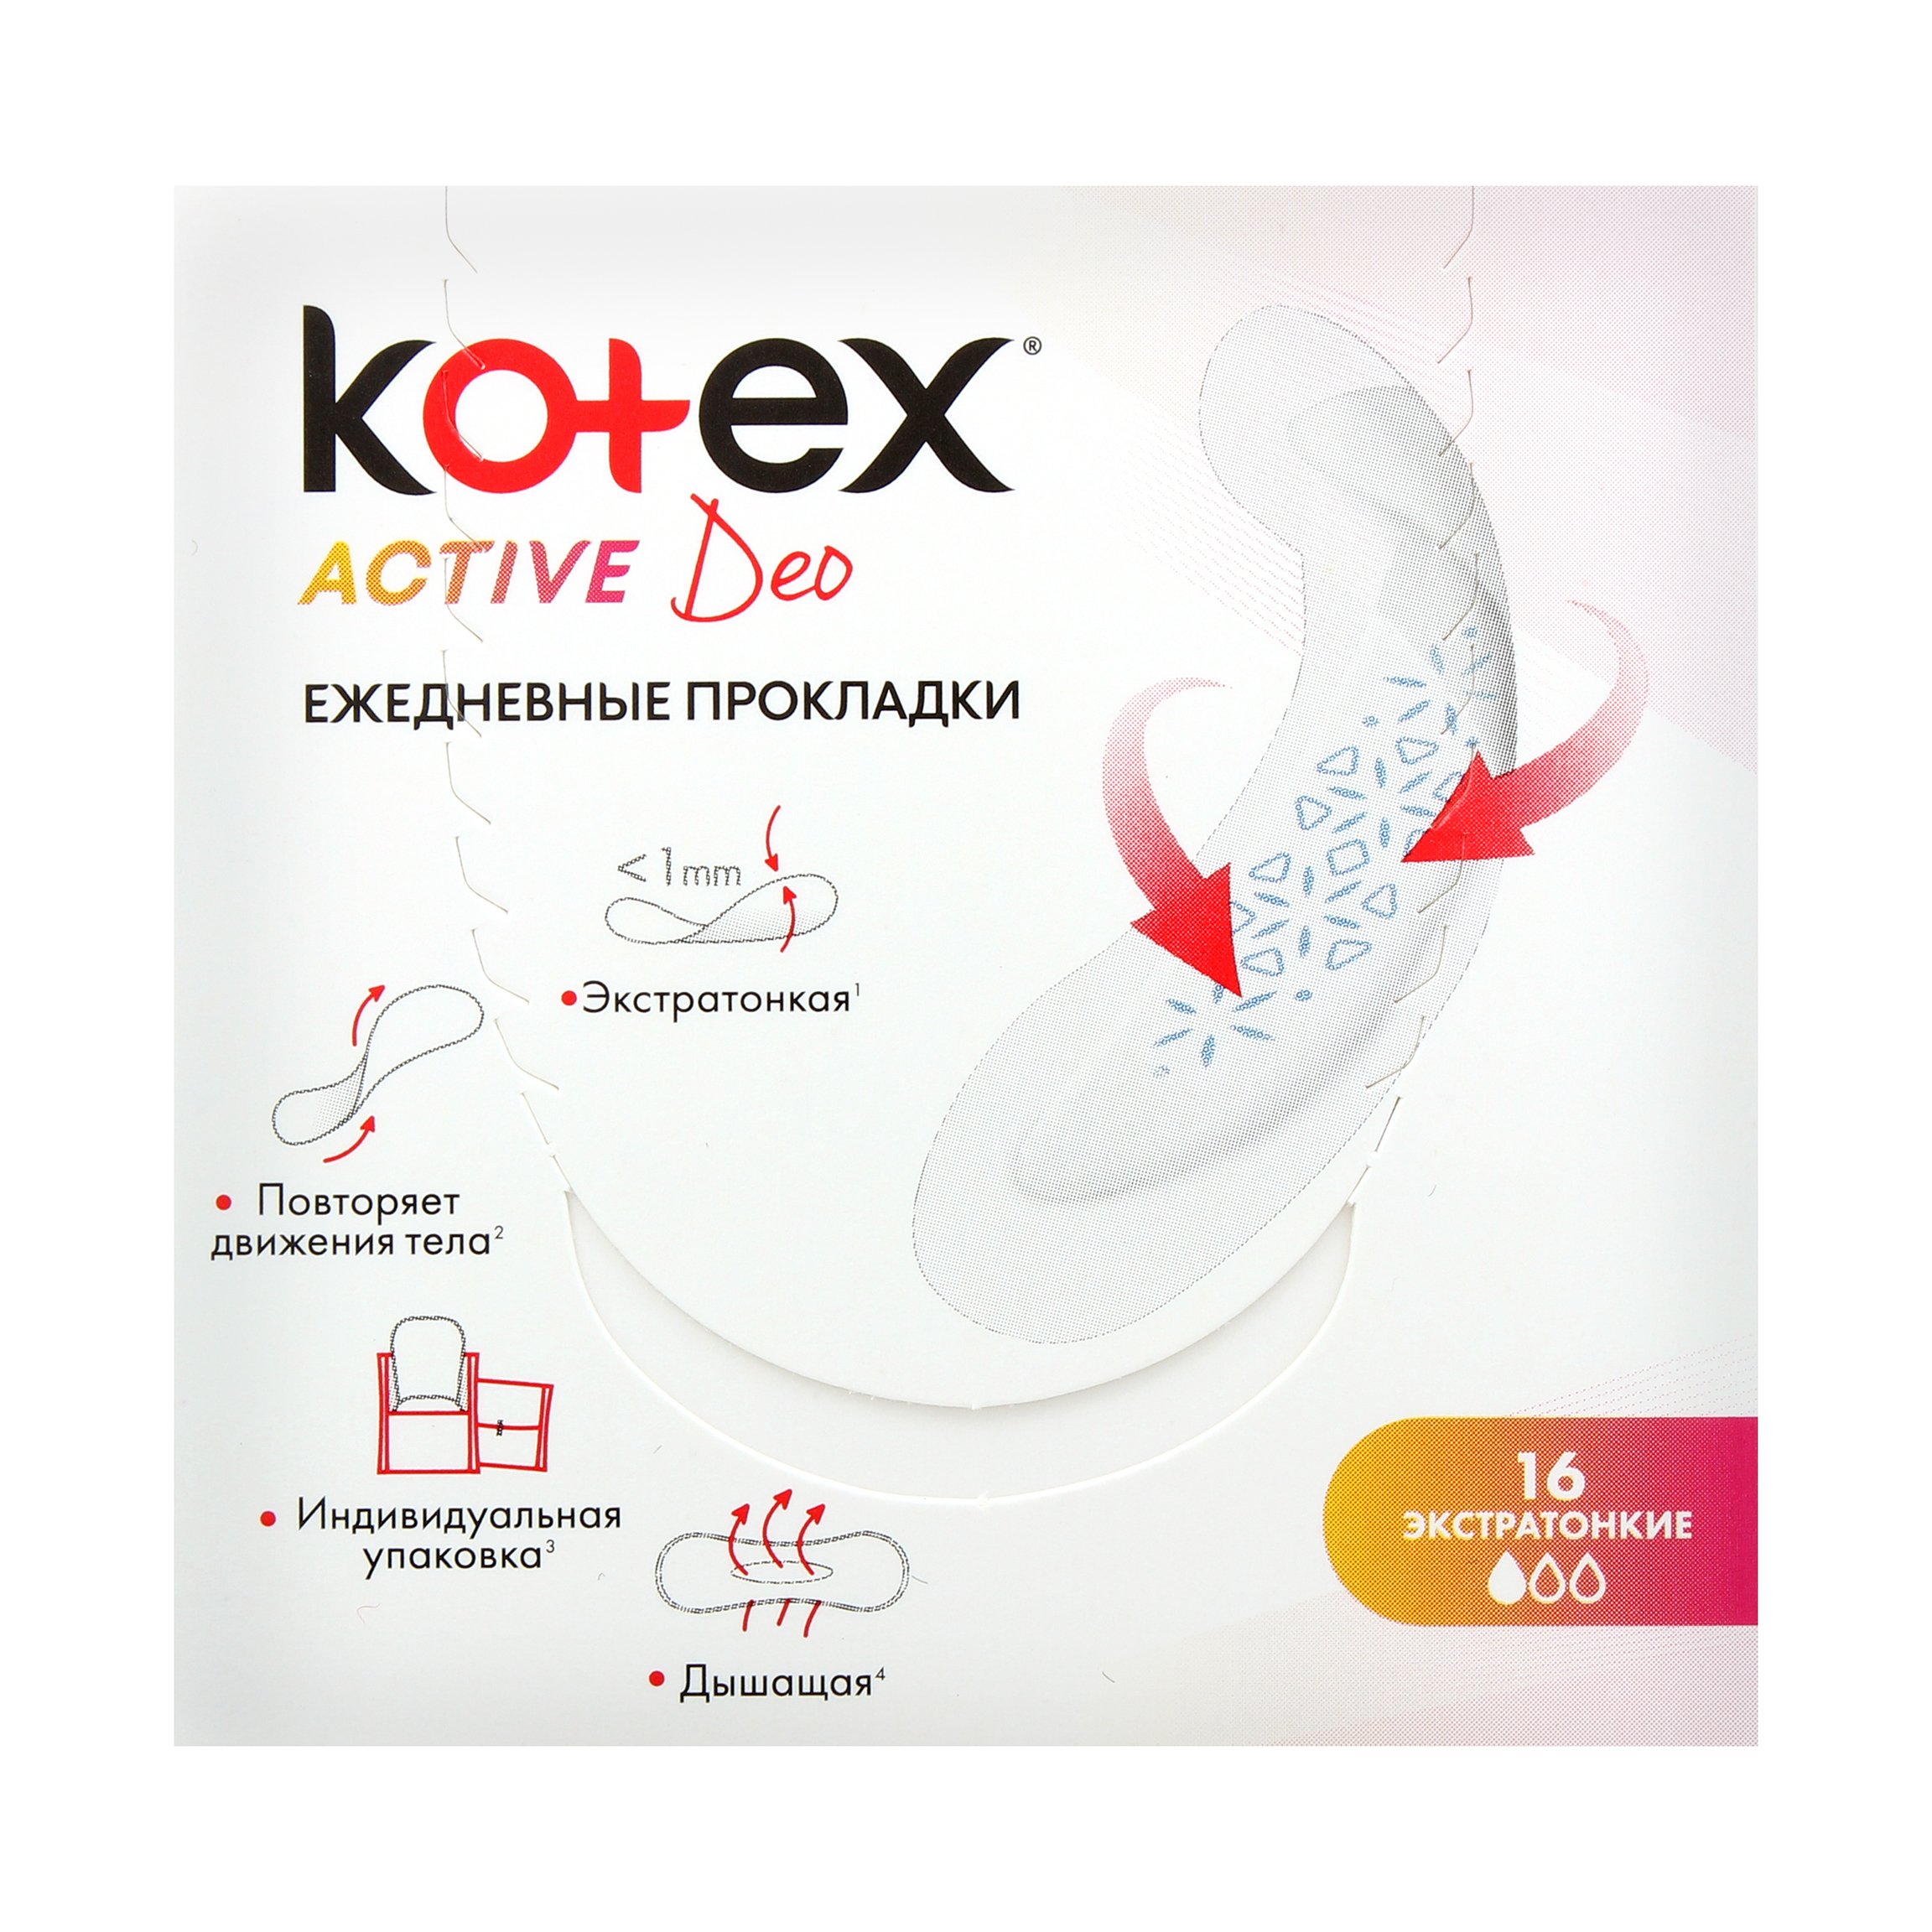 Ежедневные прокладки Kotex Active 16 шт. - фото 2